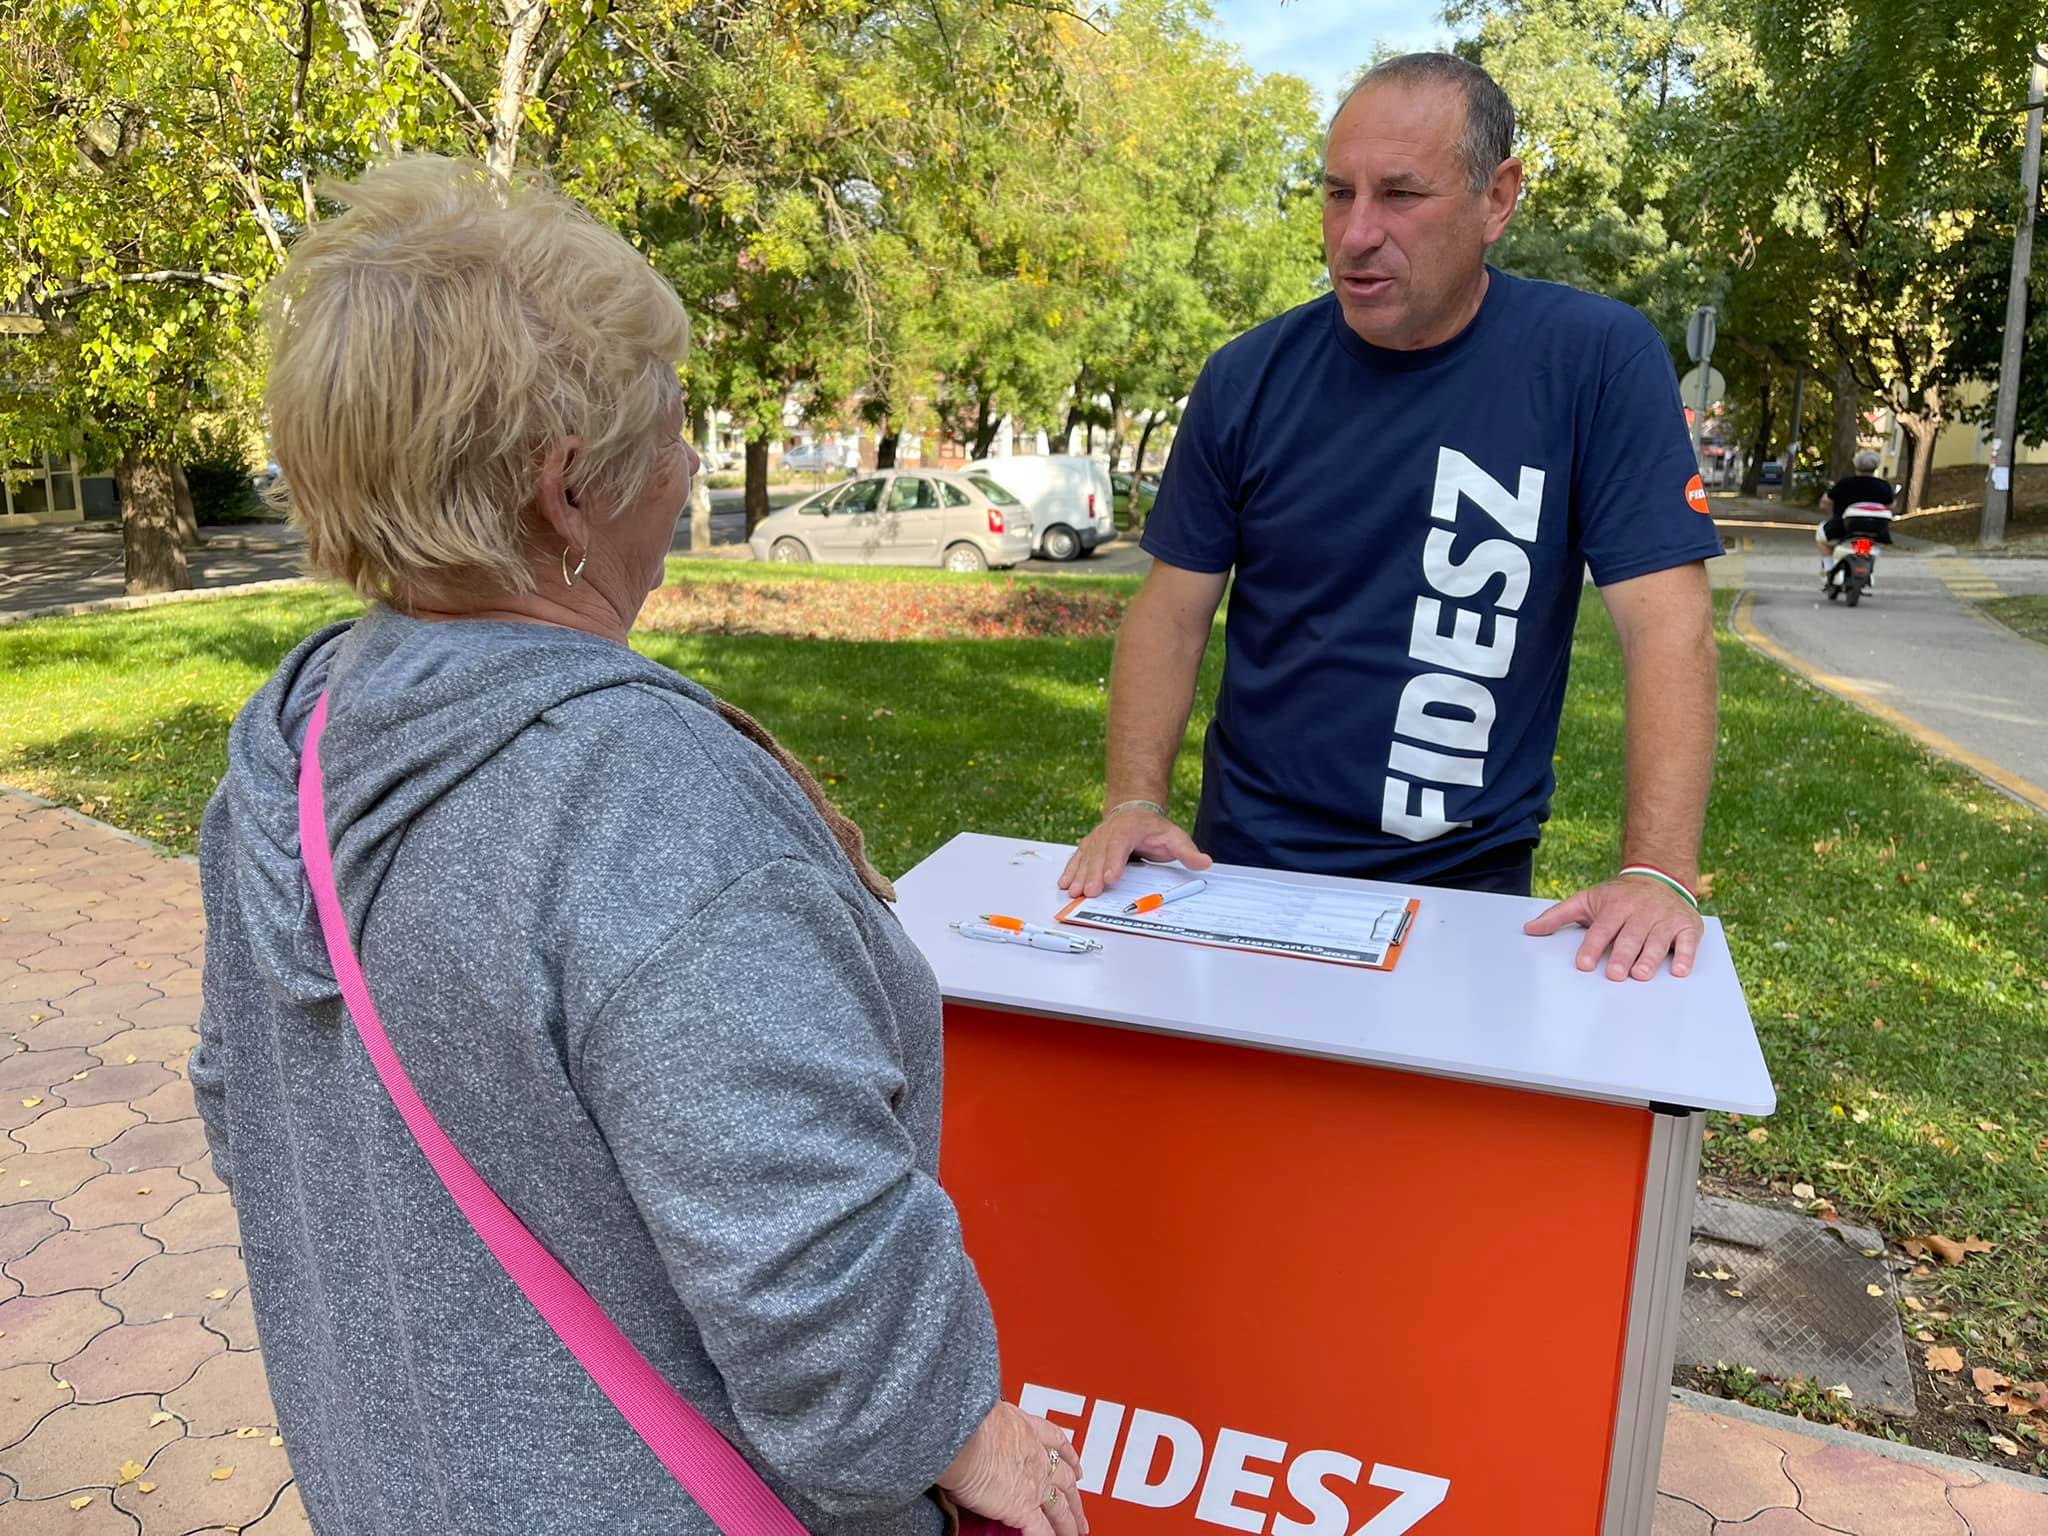 Nemzethalálként mutatja be az ellenzékre leadott szavazatokat a Fidesz parlamenti képviselője